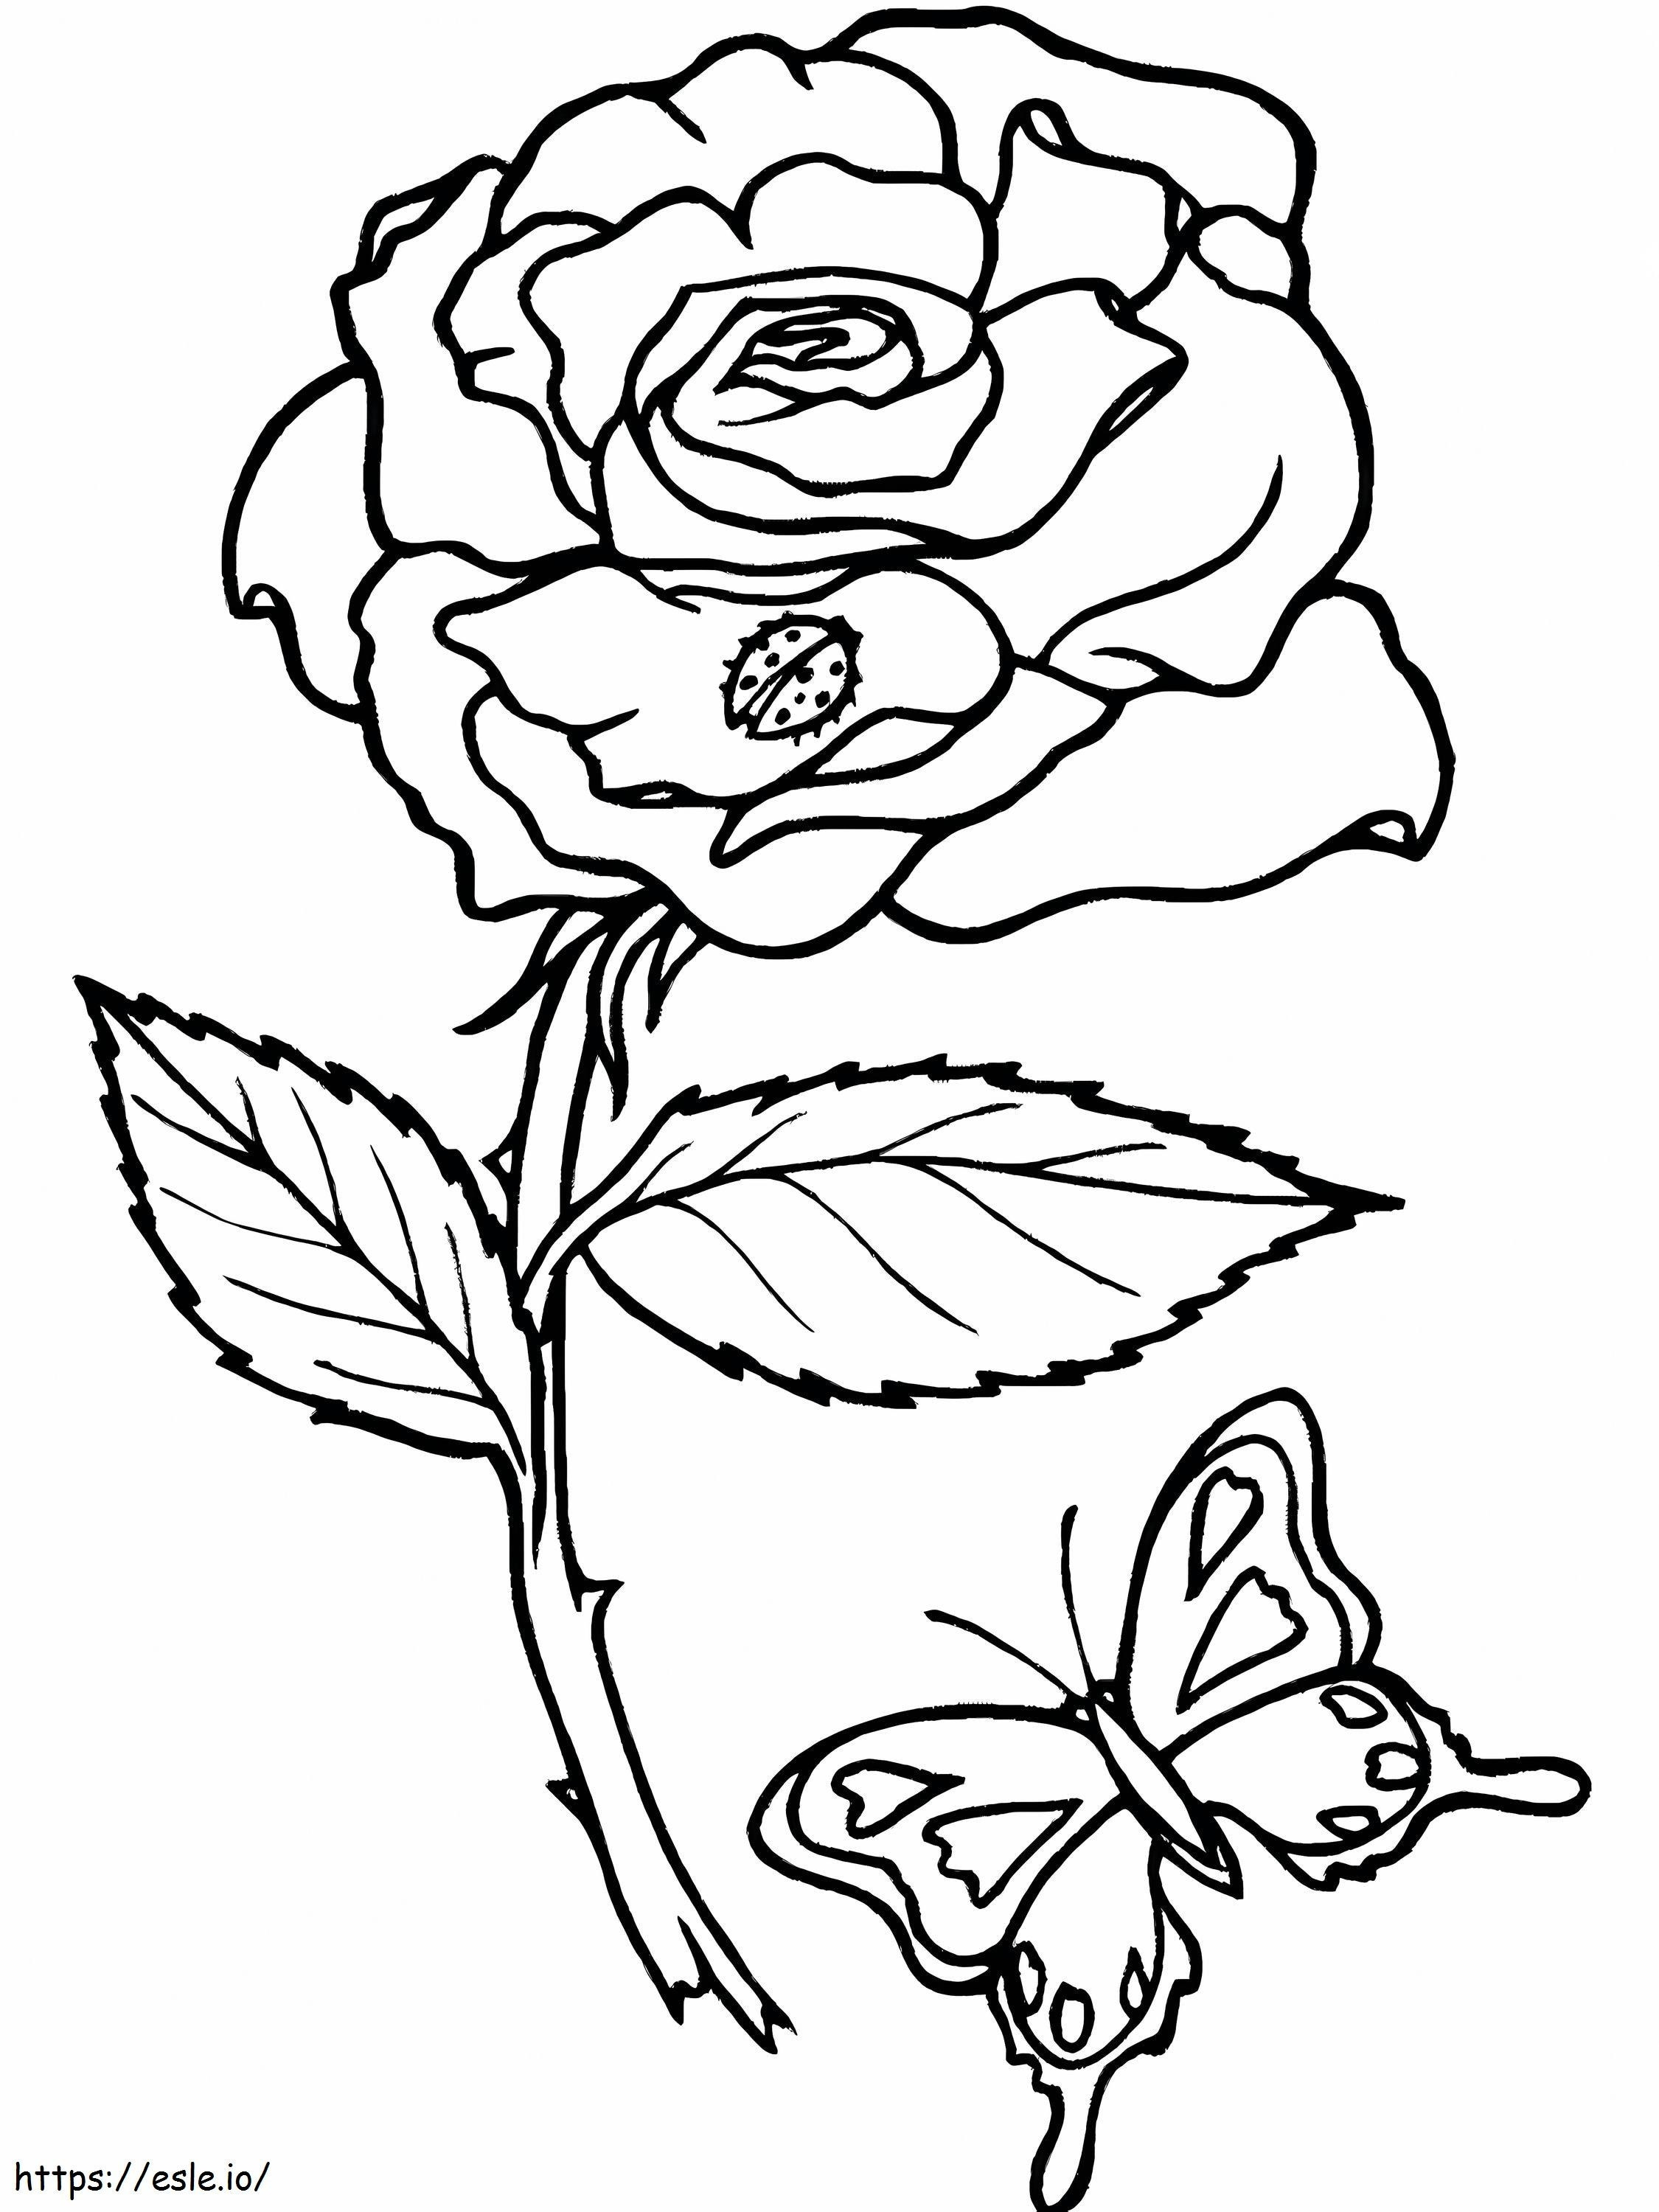 Coloriage Rose et papillon à imprimer dessin